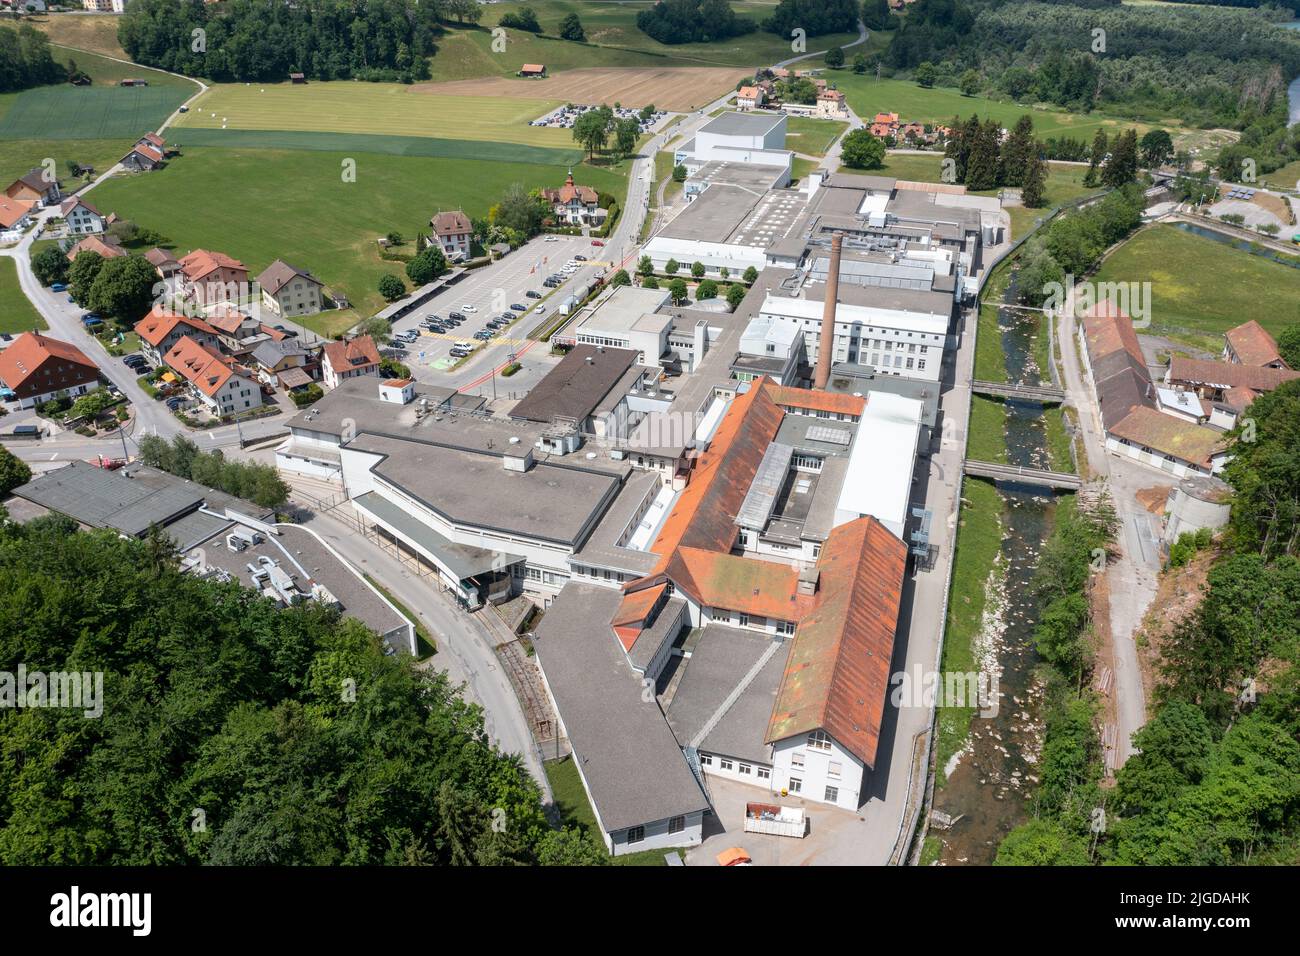 Maison Cailler, Schokoladenfabrik, Broc, Schweiz Stockfoto